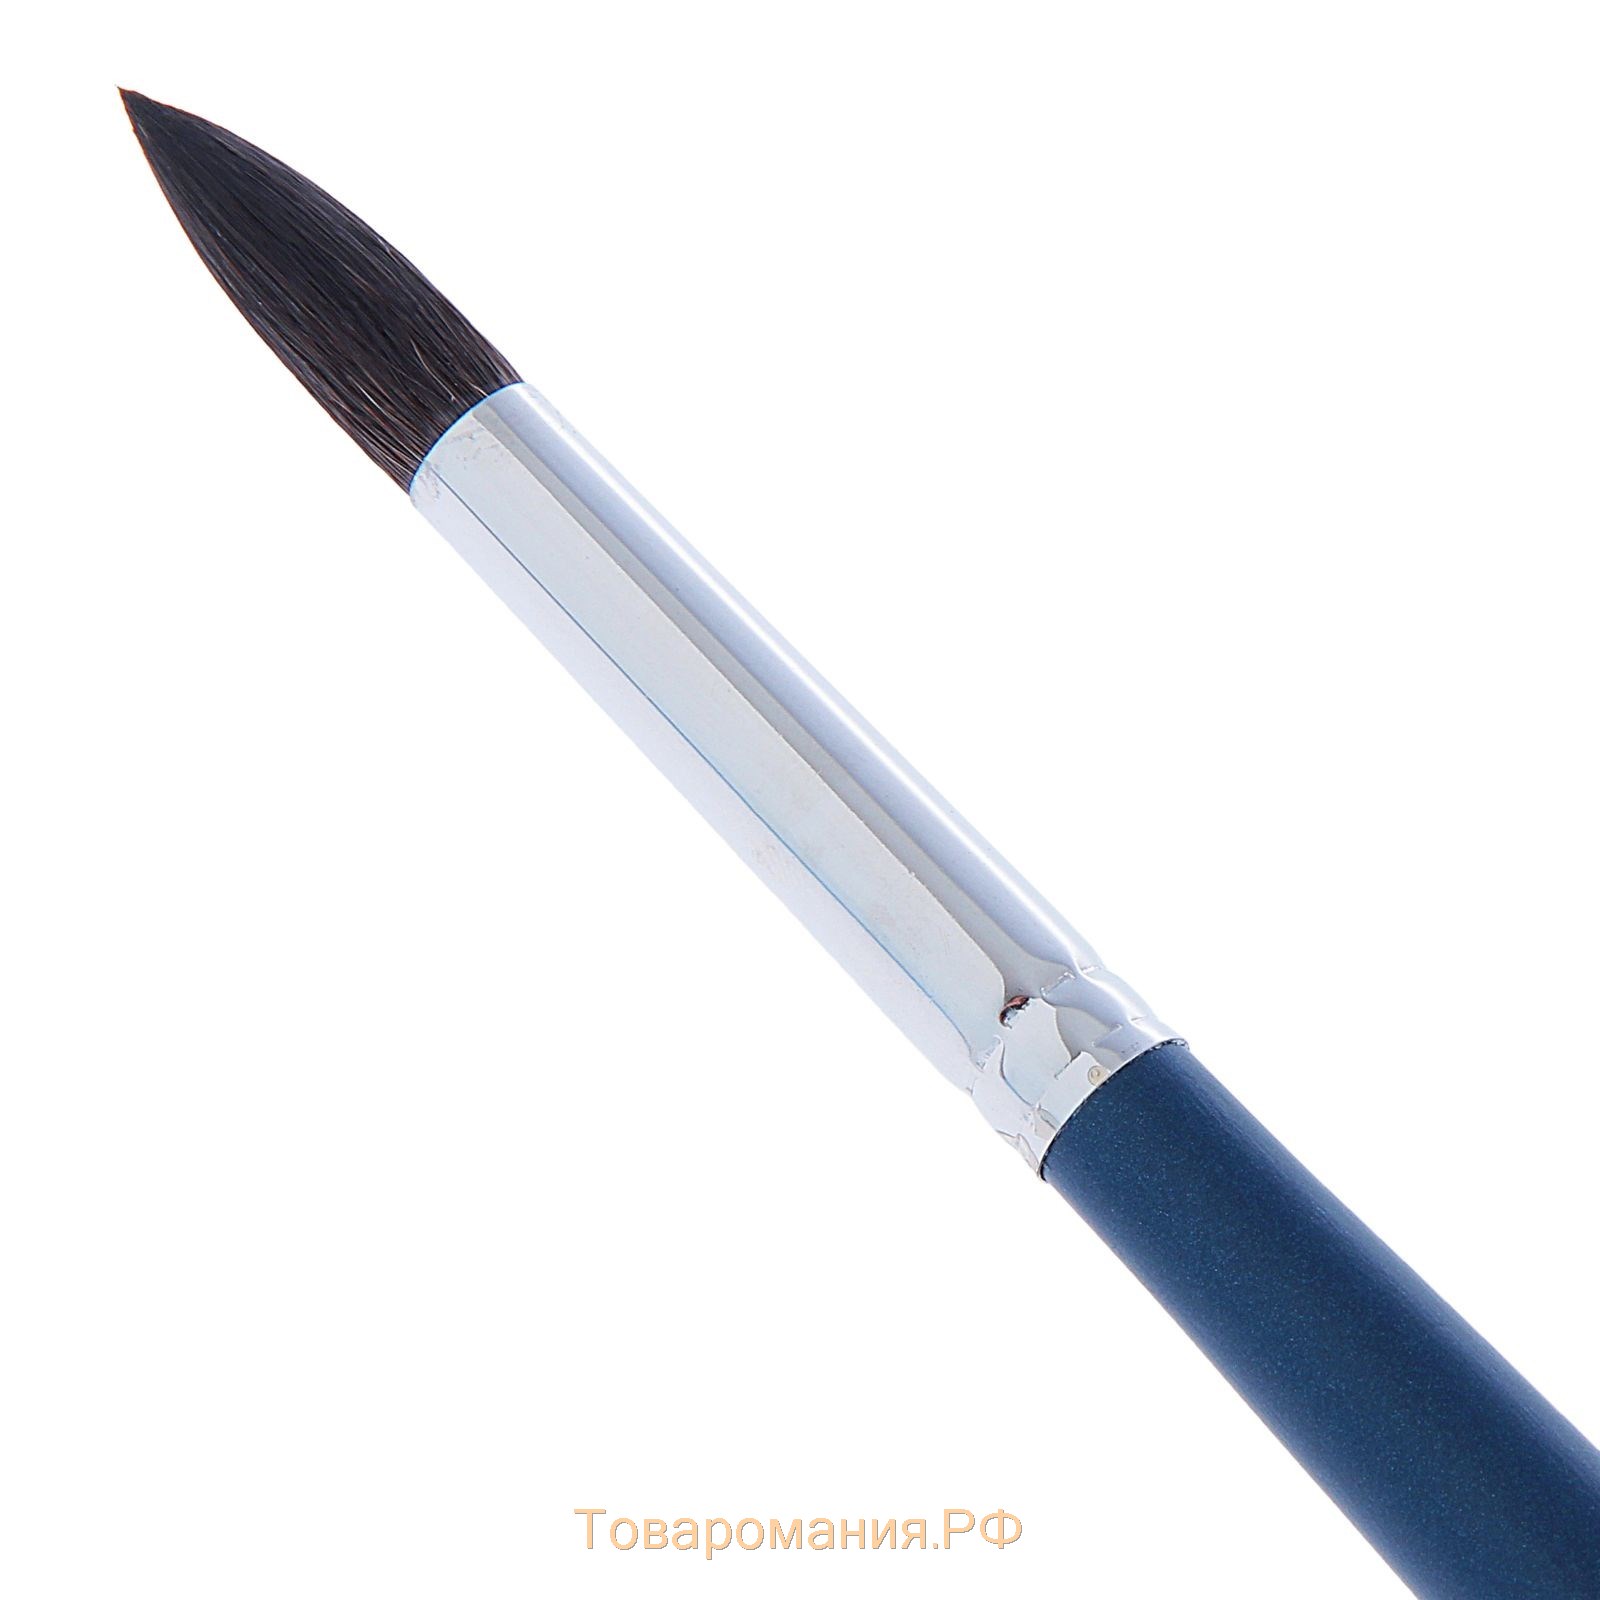 Кисть Белка круглая Байкал № 13, диаметр обоймы 7 мм, выход волоса 24 мм, удлинённая ручка